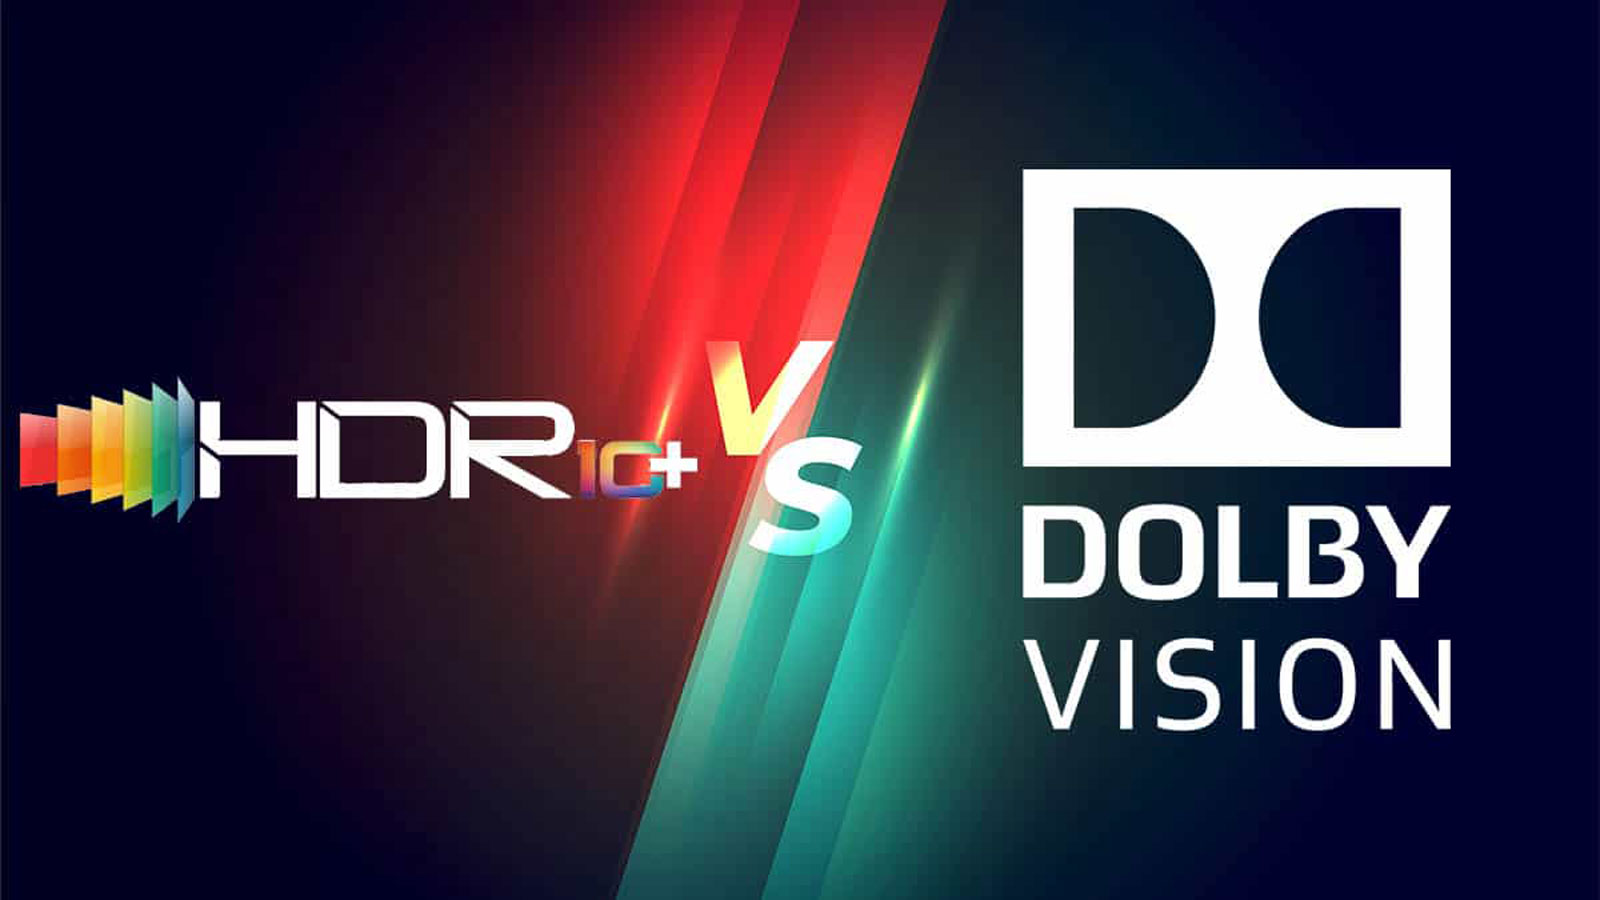 تفاوت HDR10+ با HDR10 و دالبی ویژن چیست؟